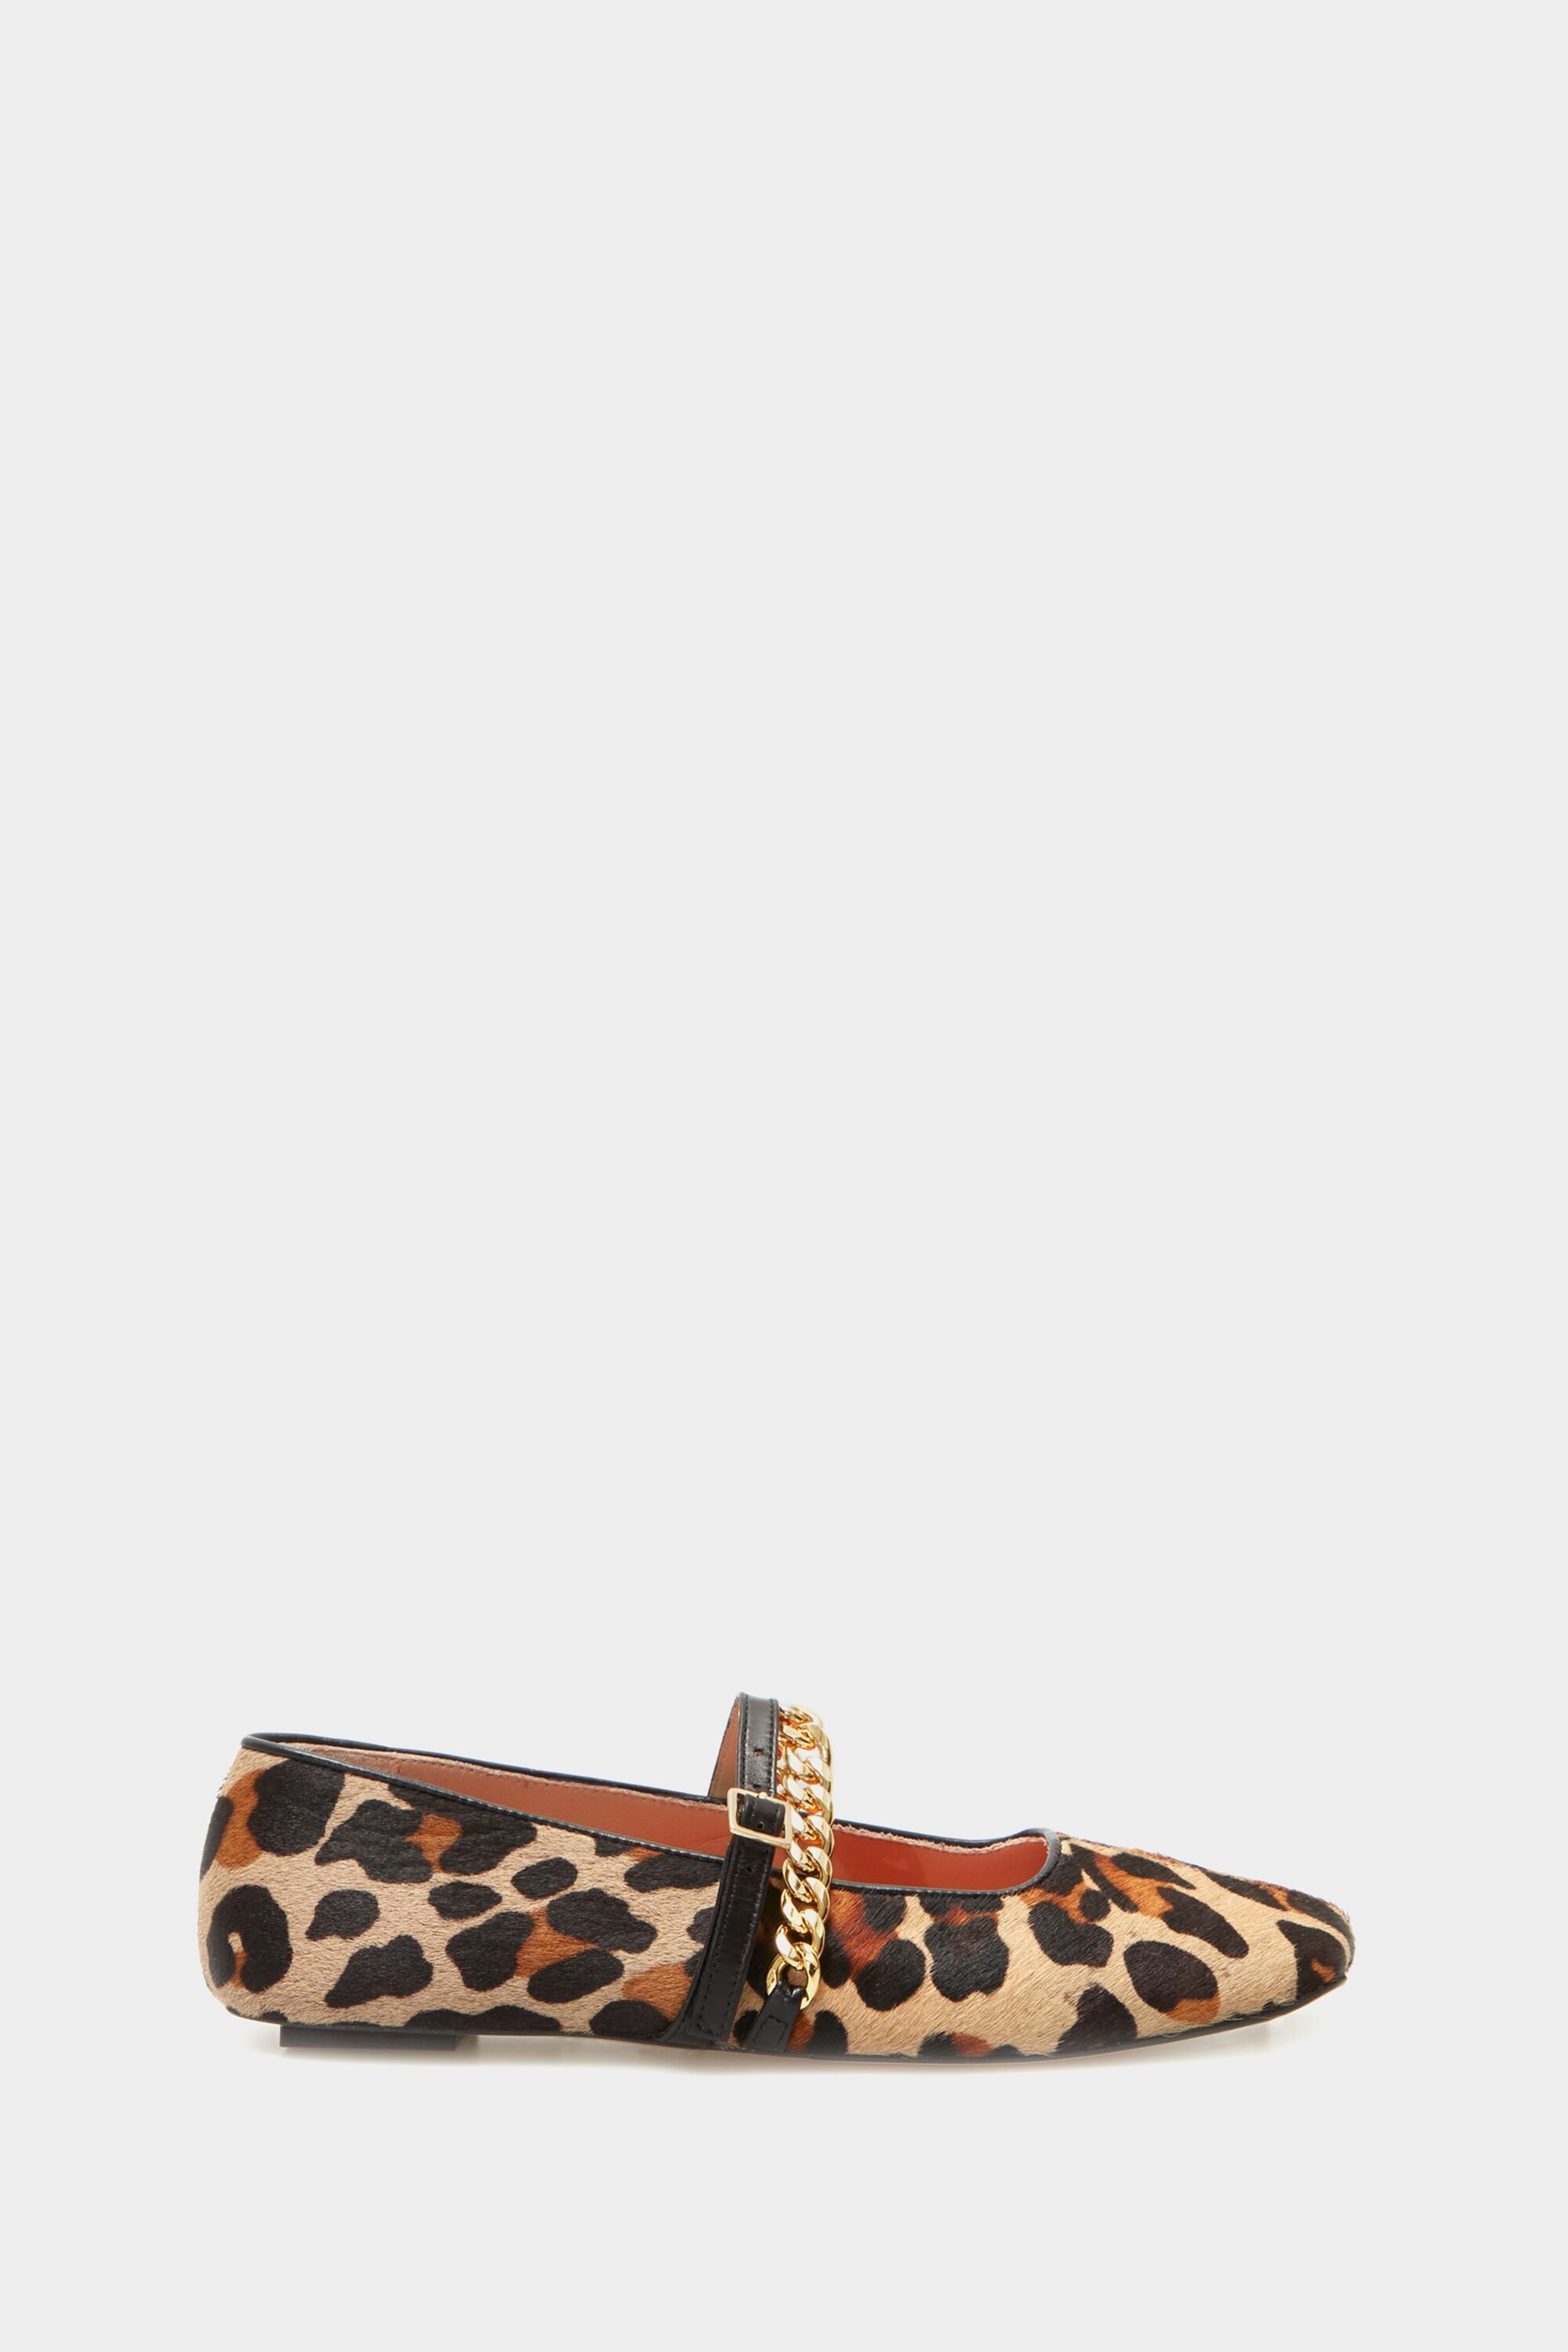 Zapato plano piel estampado leopardo cadena